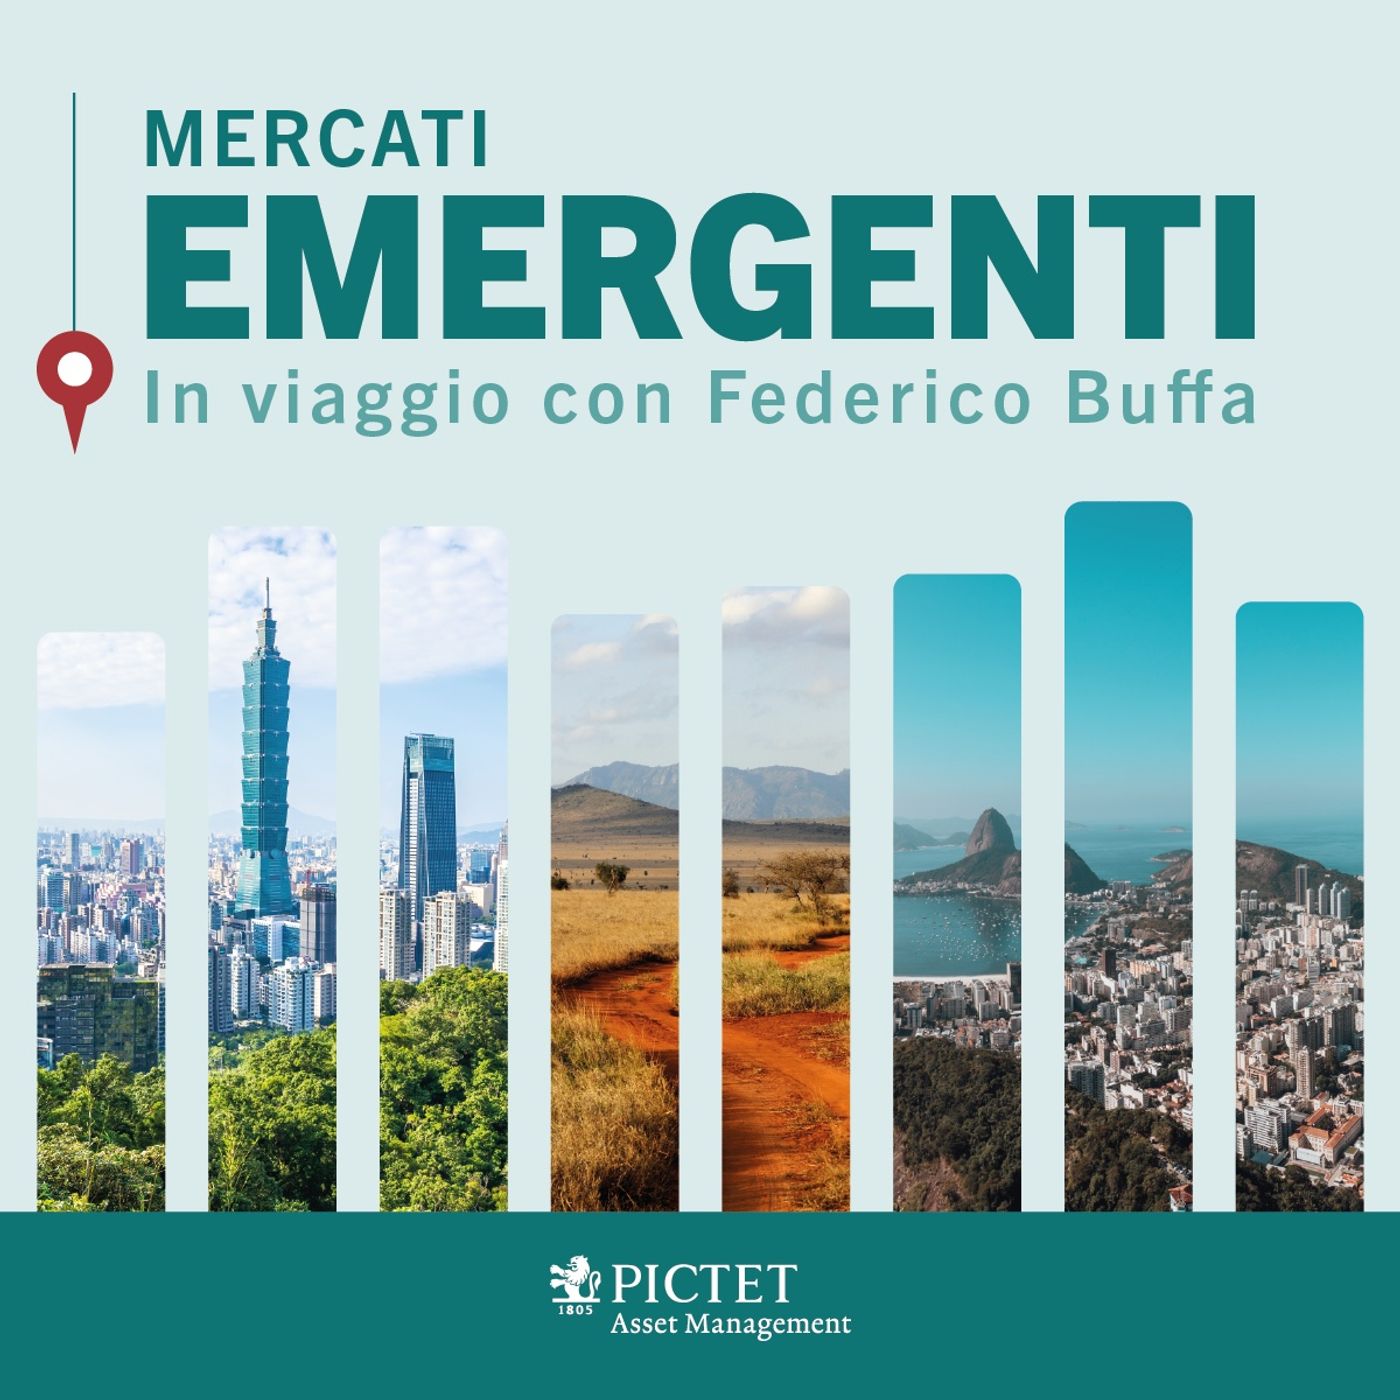 Mercati Emergenti – In viaggio con Federico Buffa